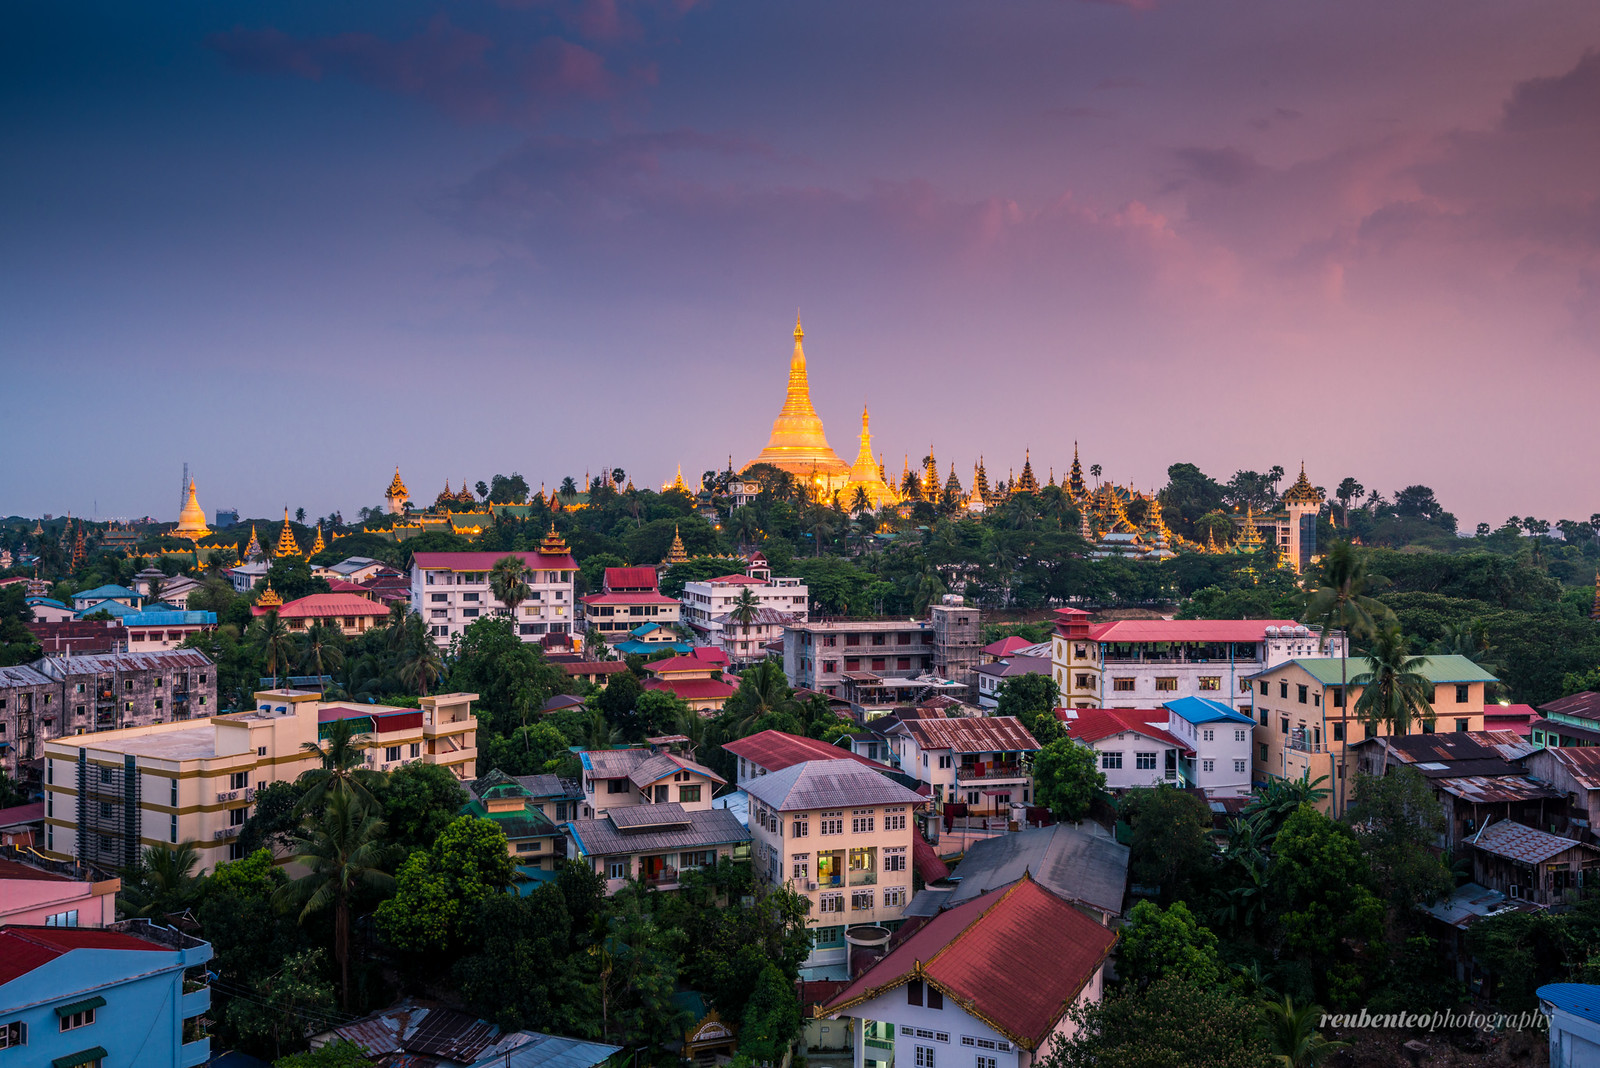 Shwedagon Pagoda at Sunset